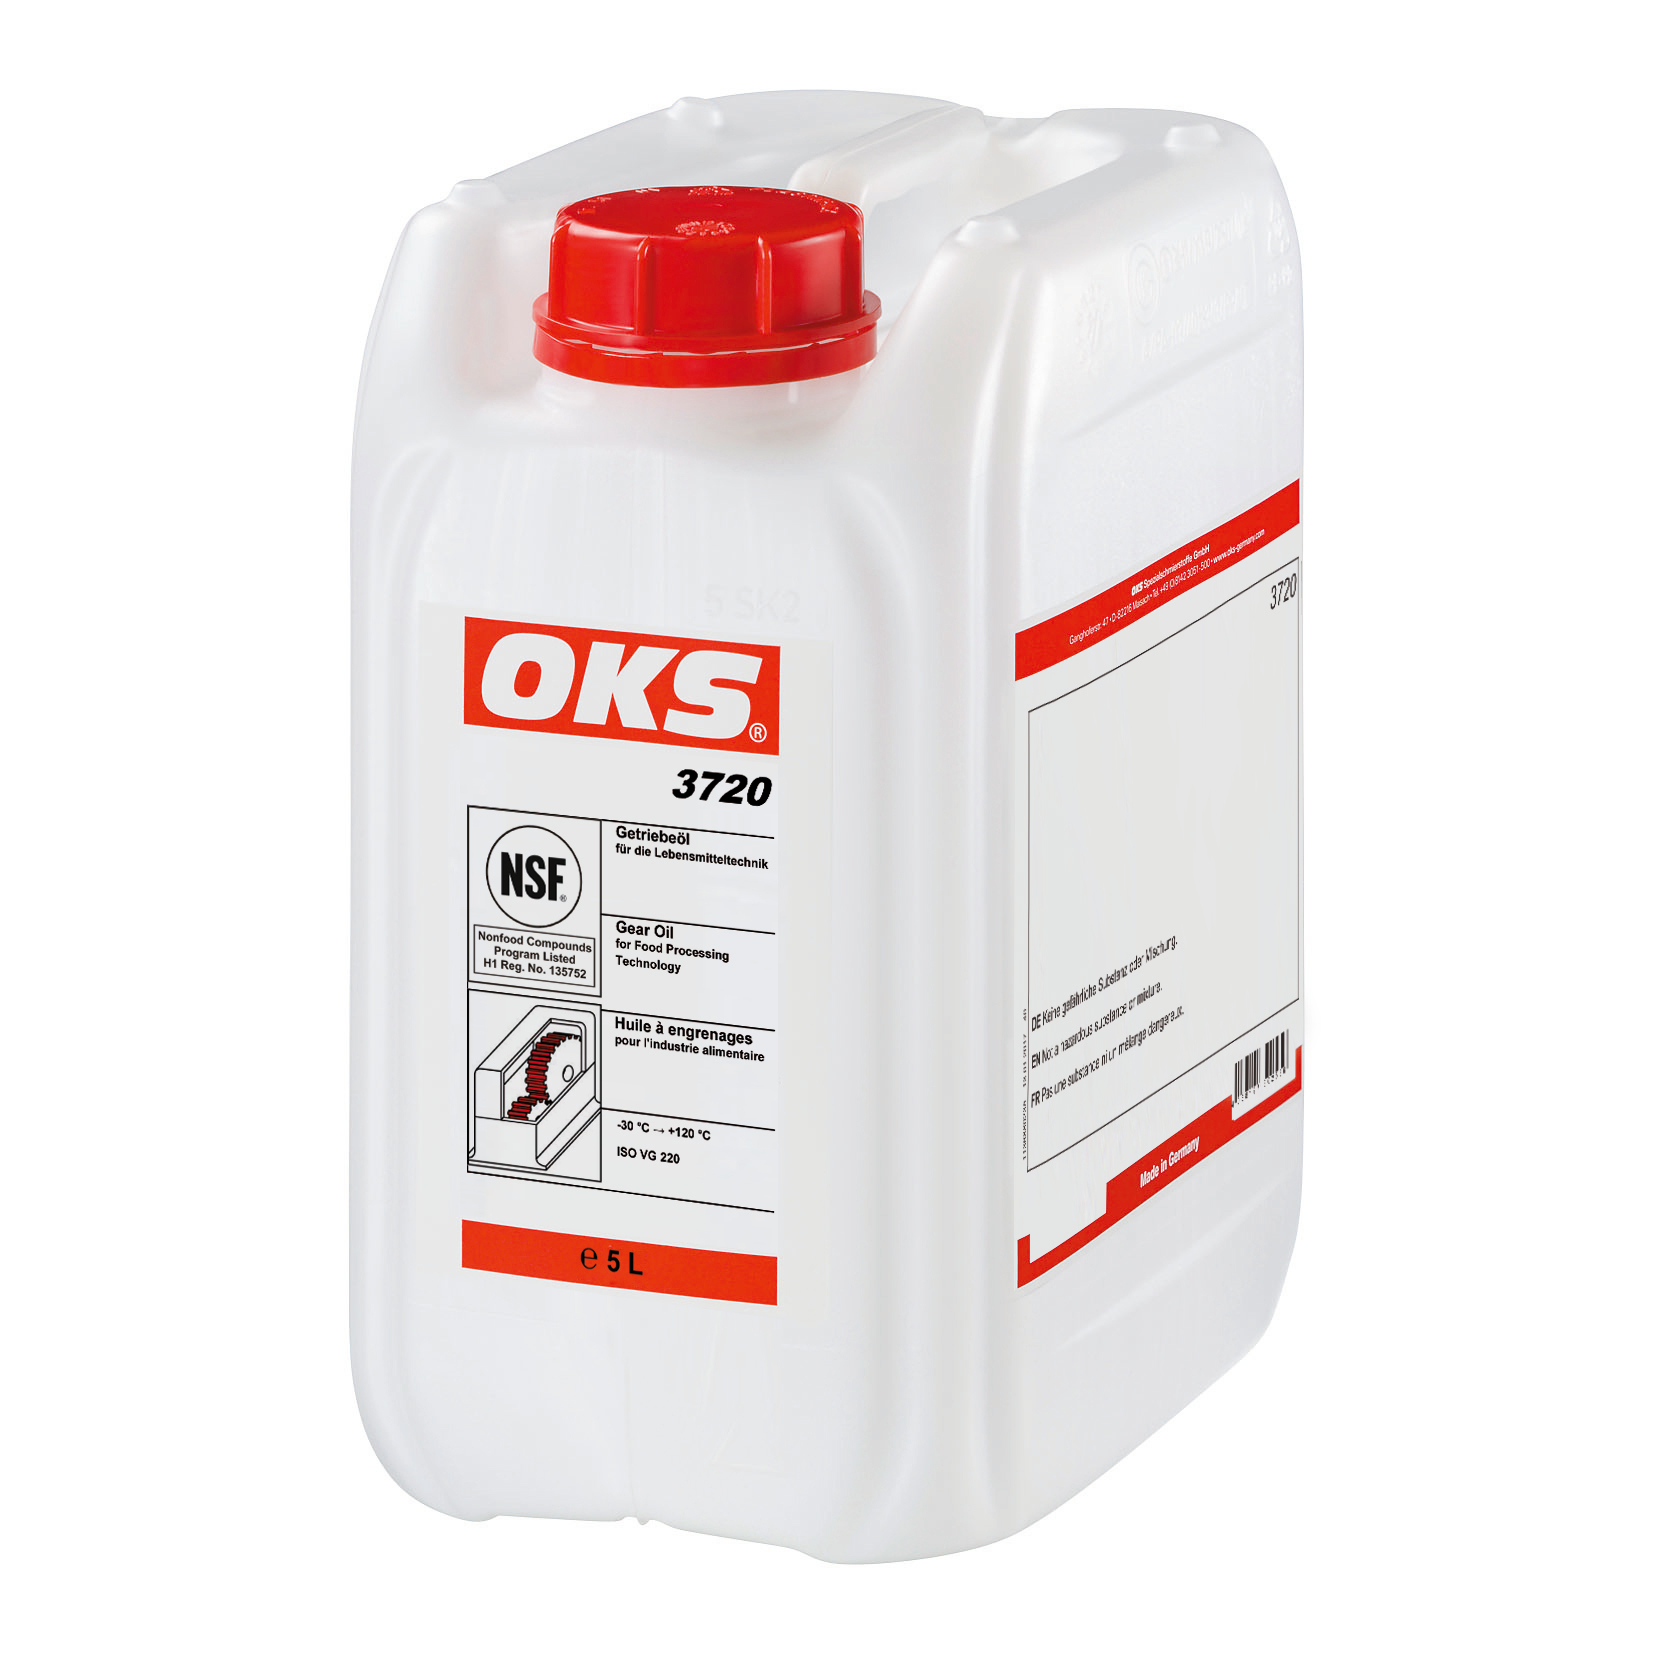 OKS3720-5 Volledig synthetische olie van ISO VG-klasse 220 voor smering van tandwieloverbrengingen en andere machinedelen in de levensmiddelentechniek.